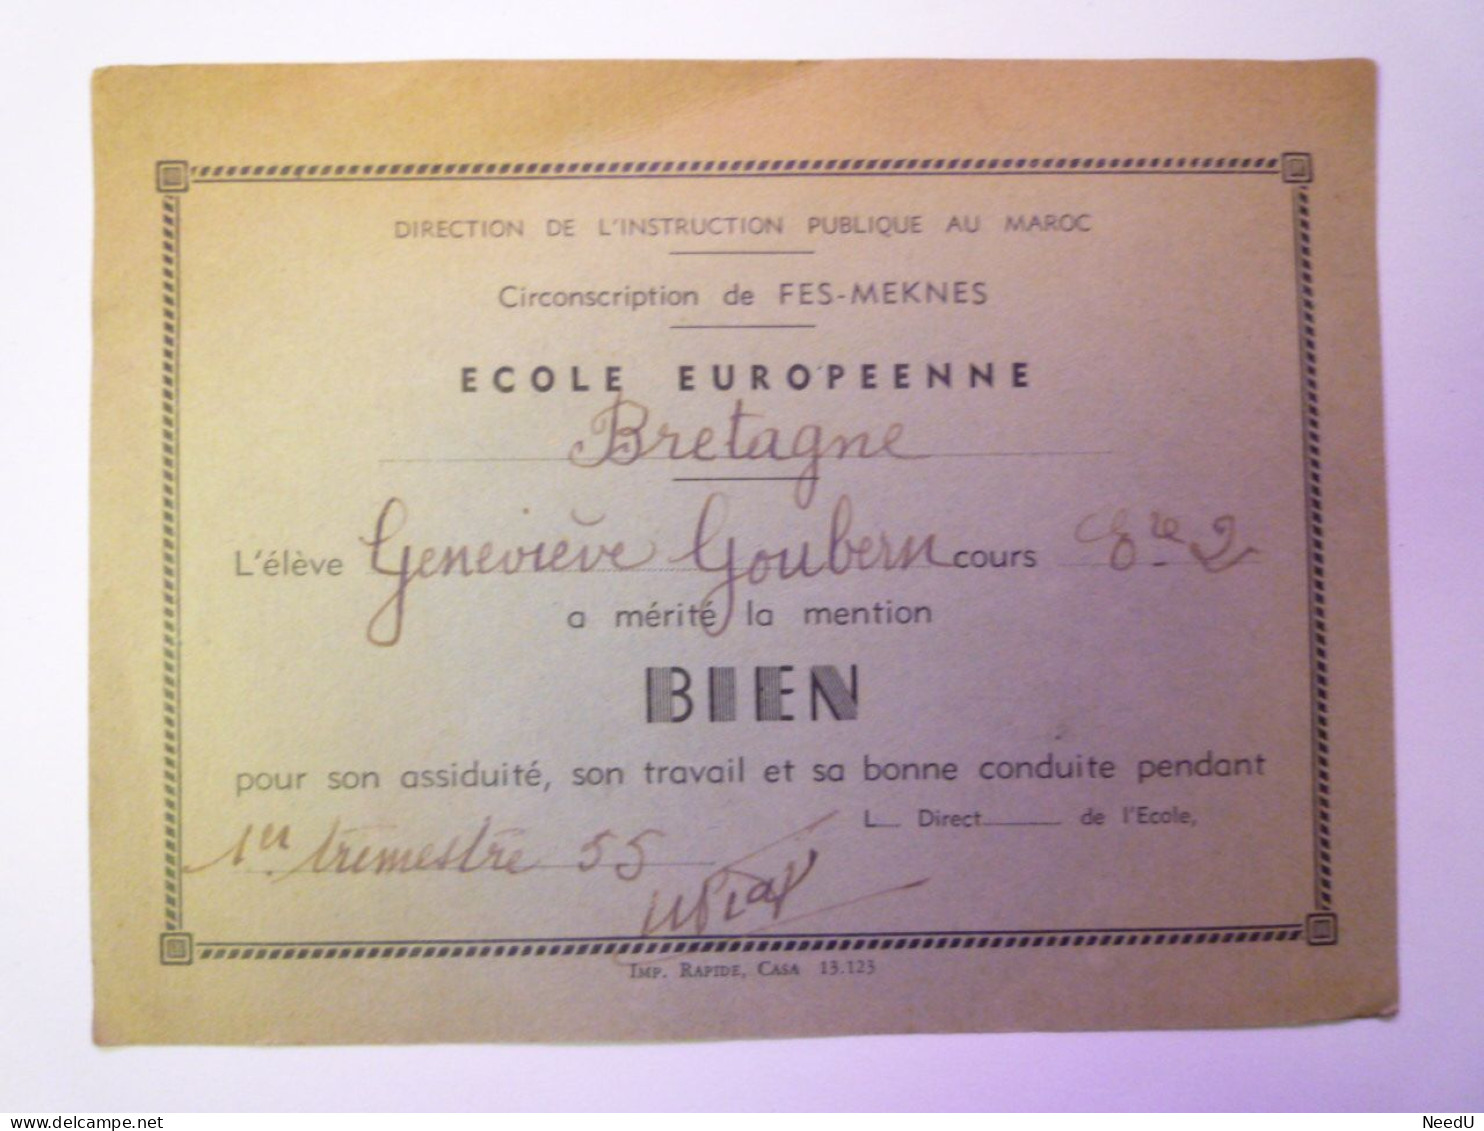 GP 2024 - 4  ECOLE EUROPEENNE  "BRETAGNE"  (Maroc  -  FES-MEKNES)  MENTION BIEN  1955   XXX - Diplômes & Bulletins Scolaires